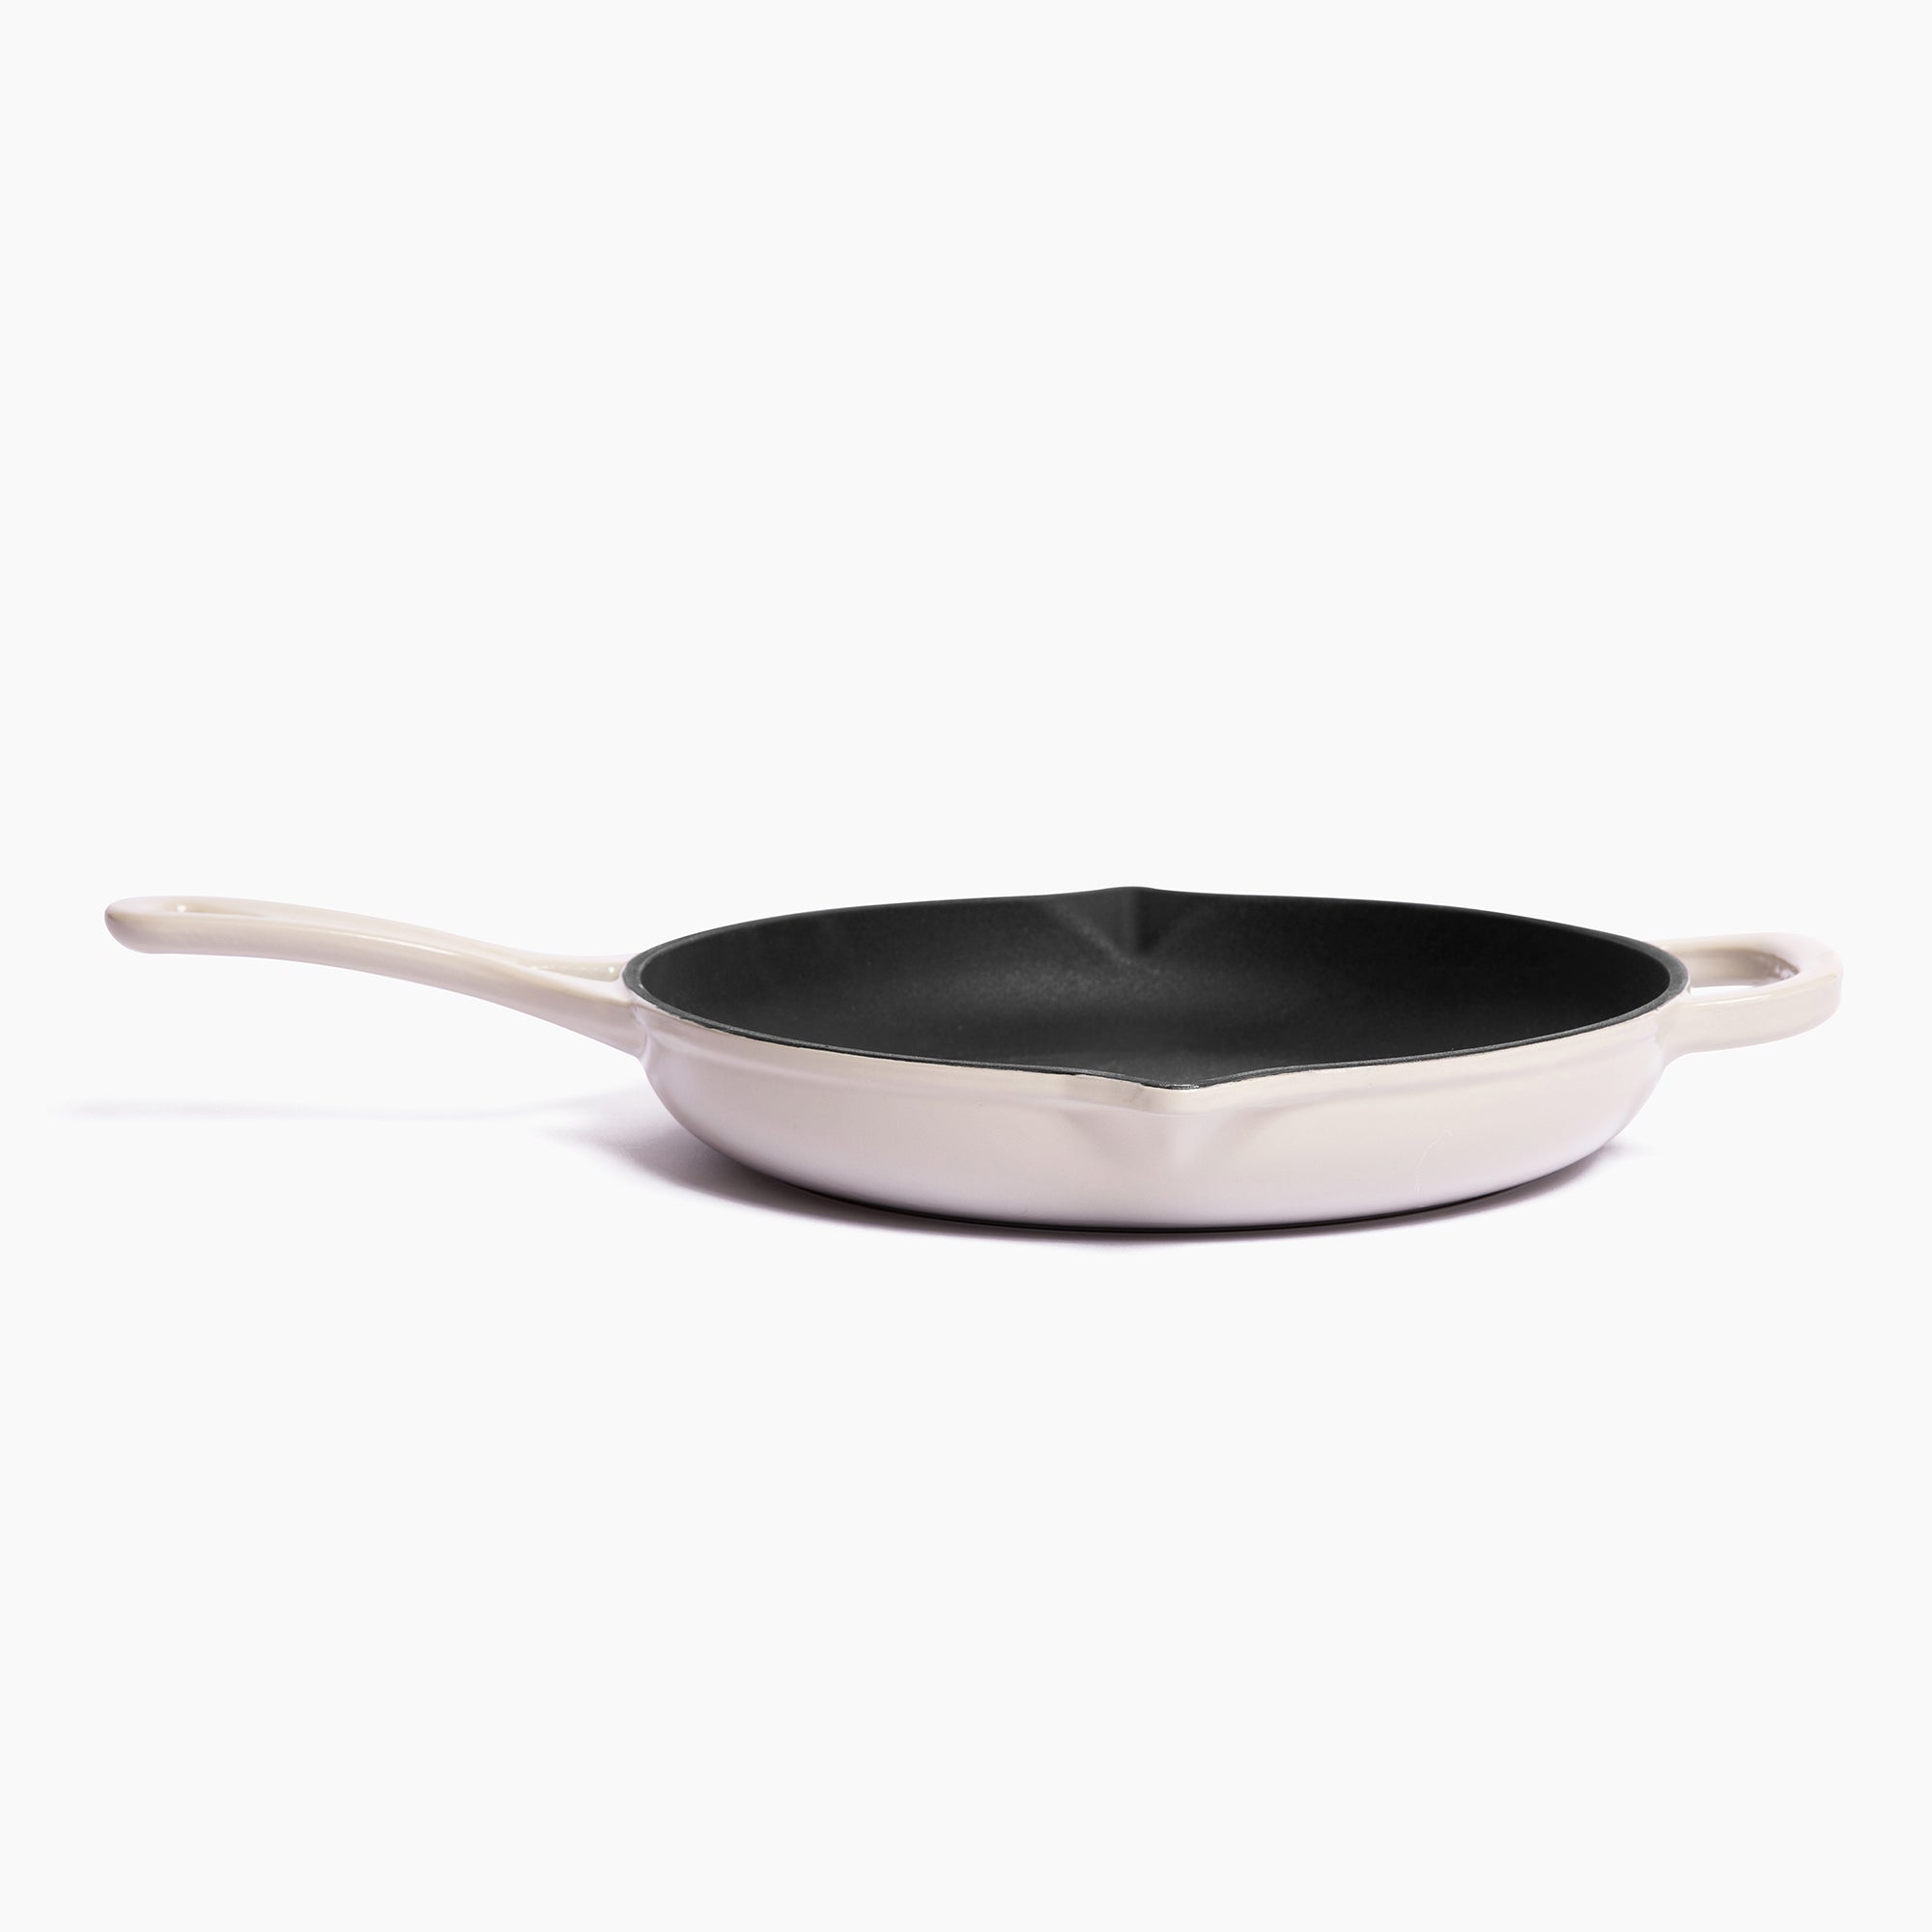 Vintage LE CREUSET Cast Iron Griddle Pan, Cream Enamel 26cm Steak Pan Frying  Pan 